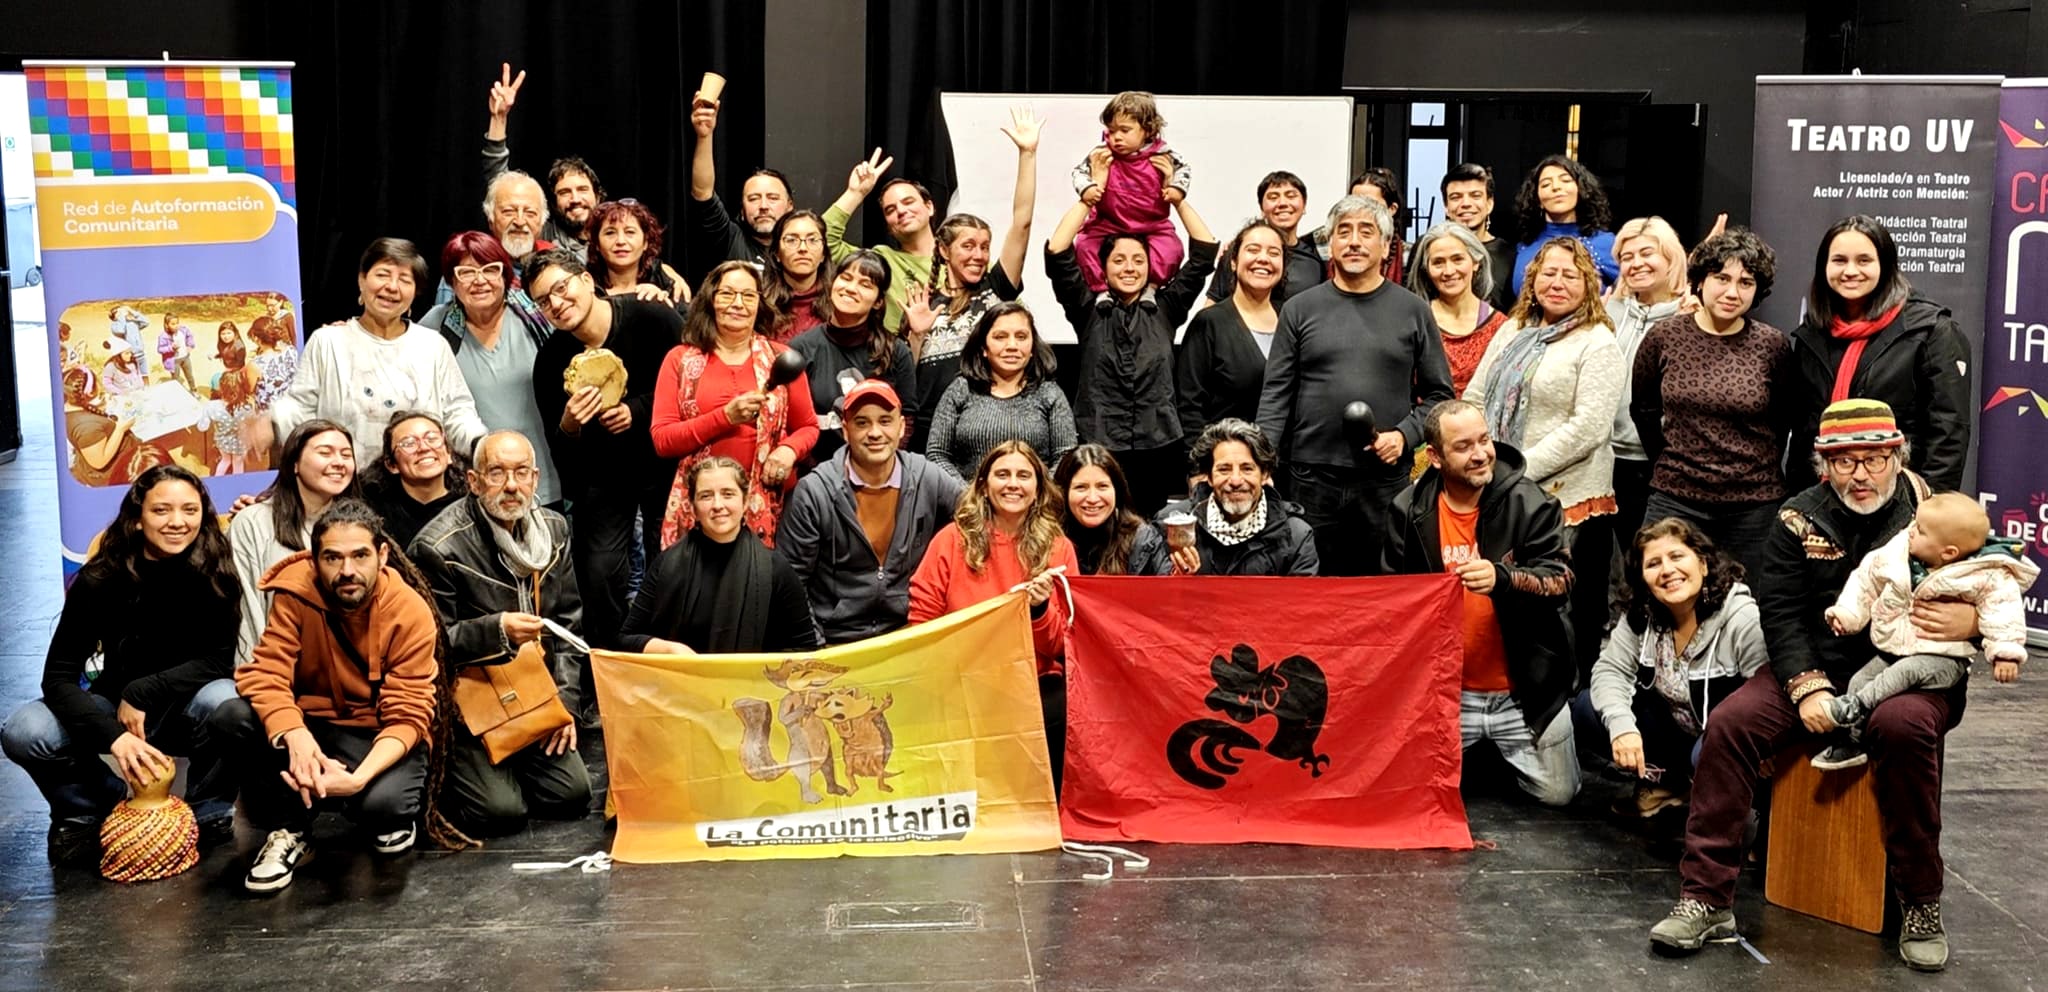 Éxito Internacional: La Comunitaria brilla en Chile